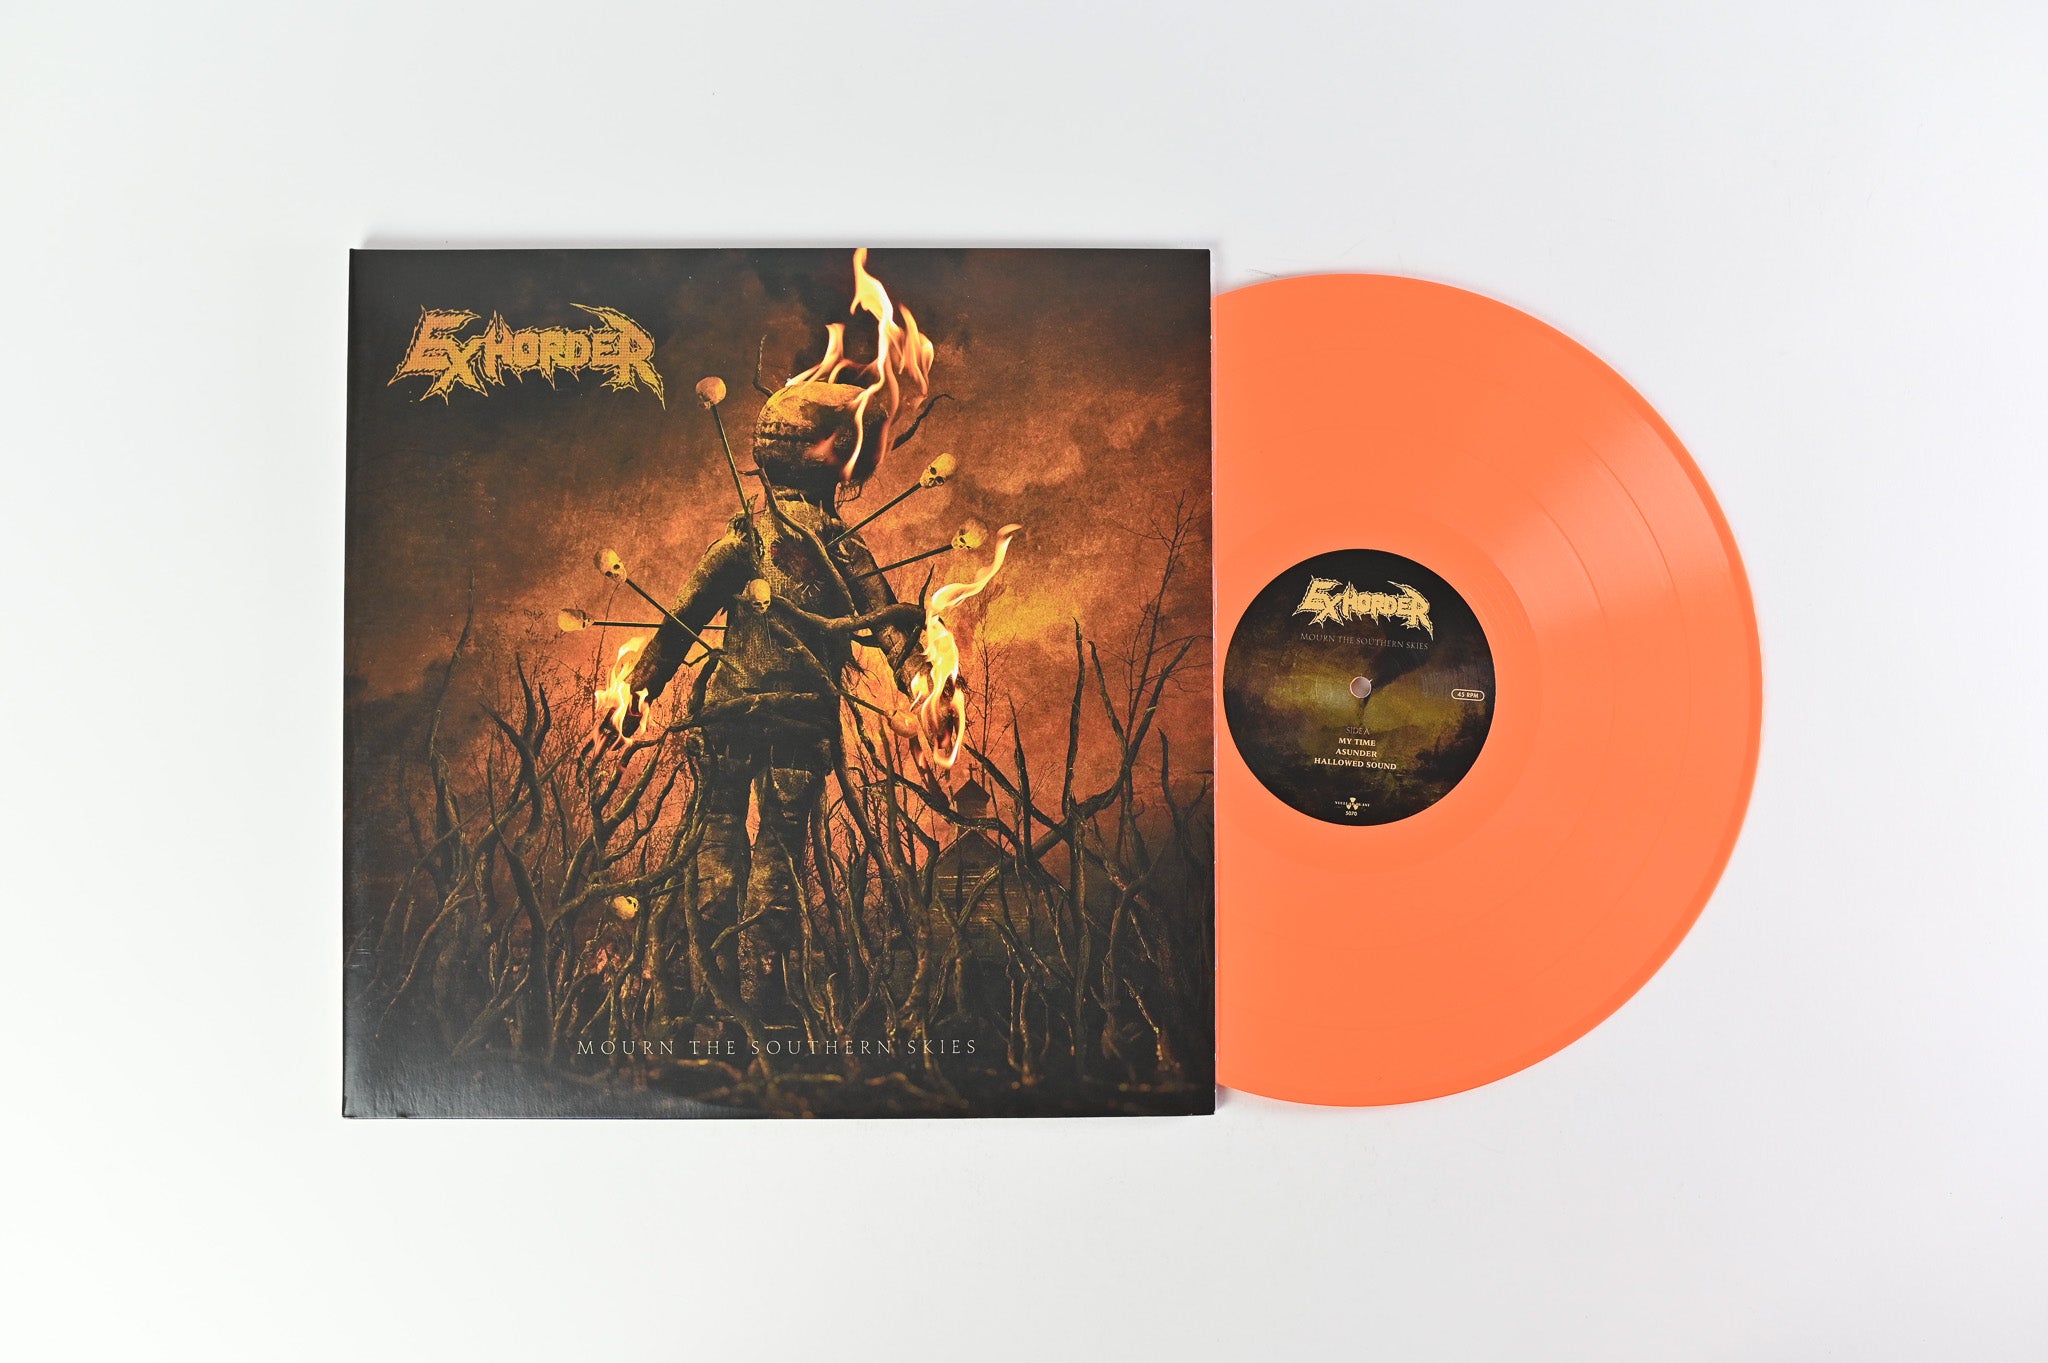 Exhorder - Mourn The Southern Skies on Nuclear Blast - Orange Vinyl